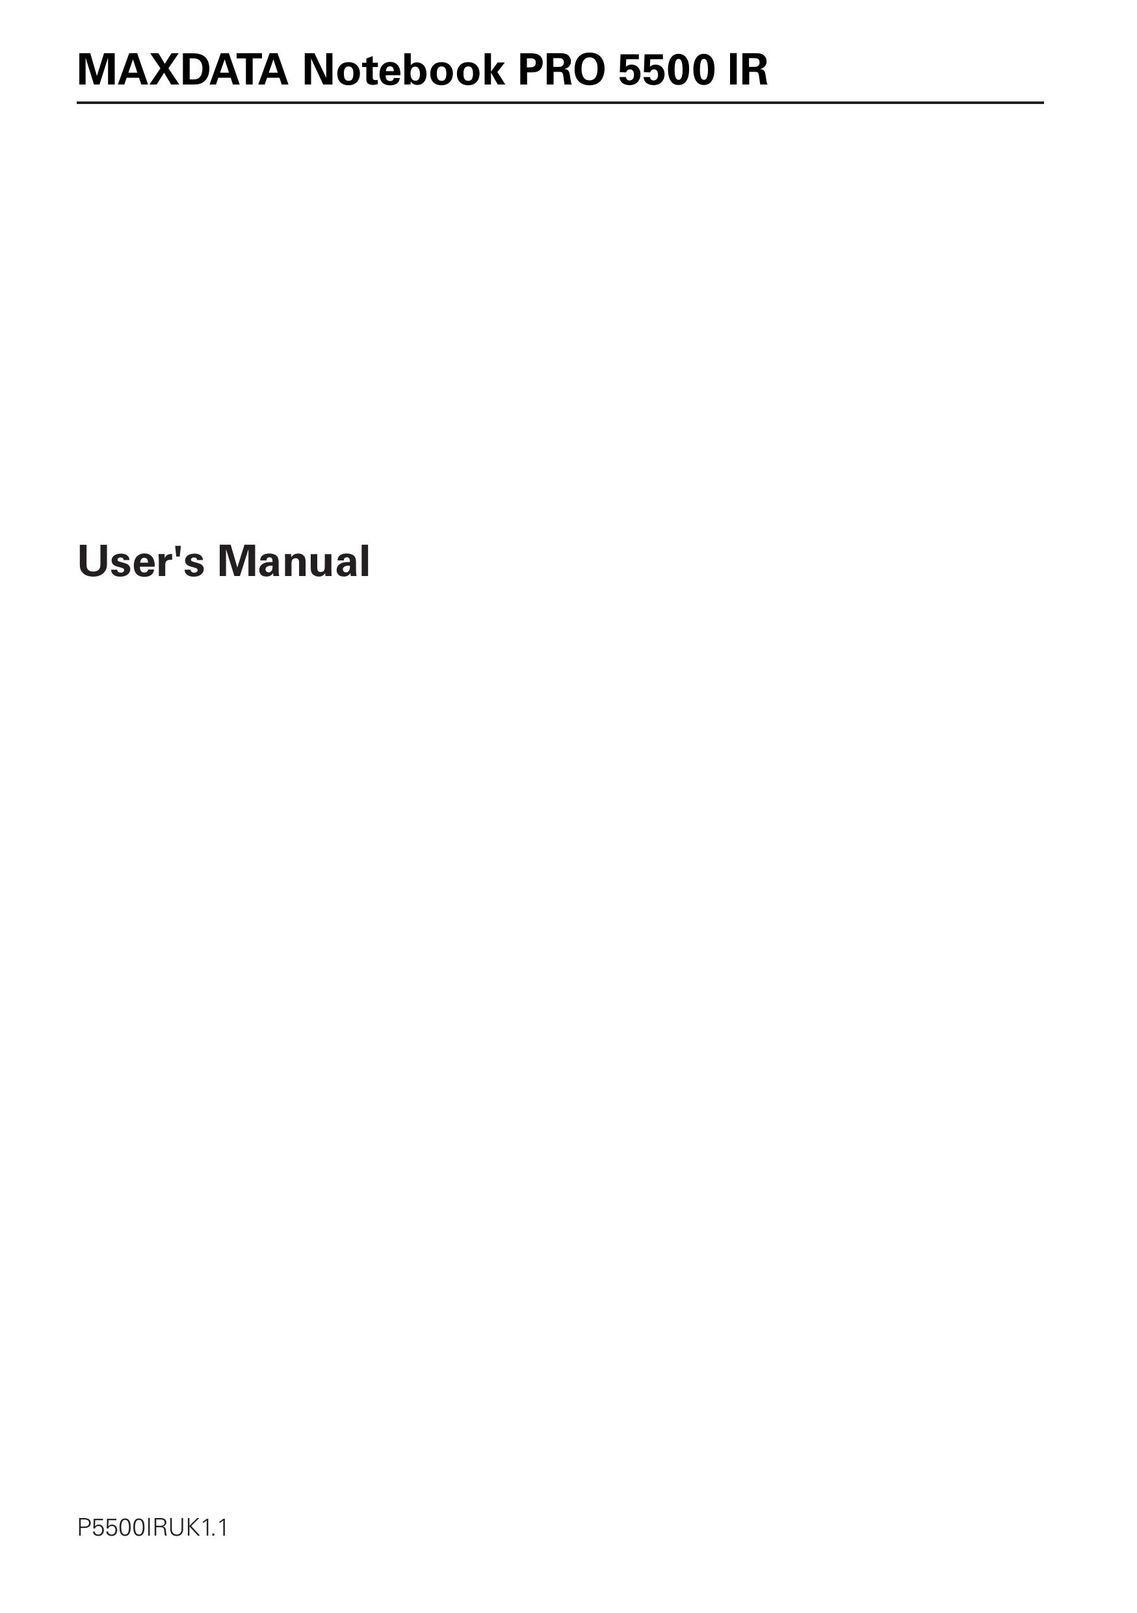 MAXDATA 5500 IR Laptop User Manual